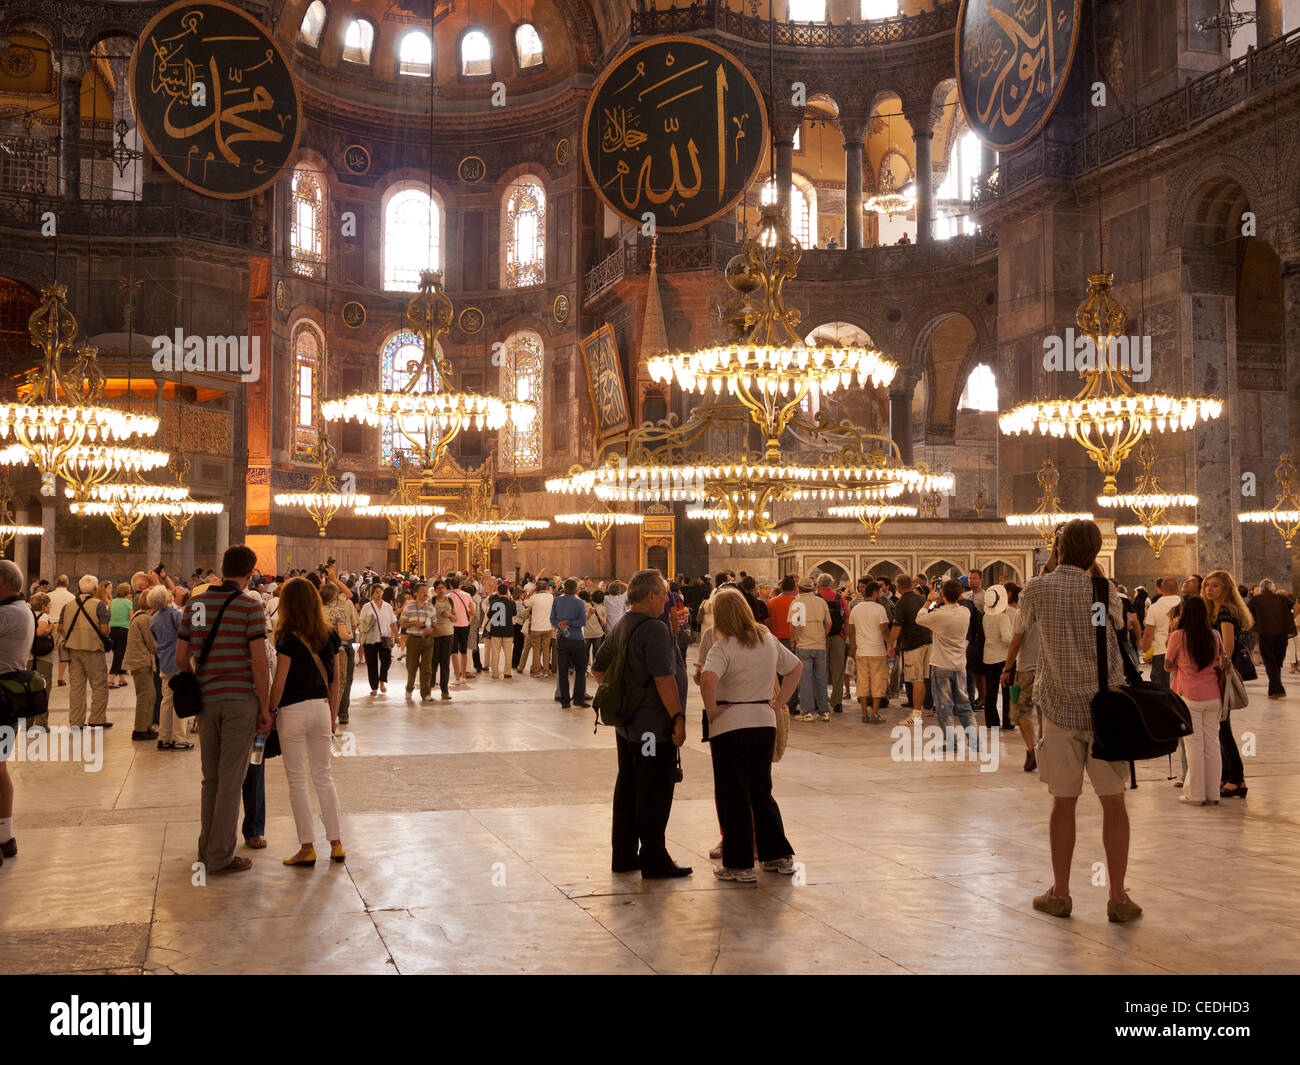 Les touristes dans la nef de la basilique Sainte-Sophie (Aya Sofya) basilique, Sultanahmet, Istanbul, Turquie Banque D'Images